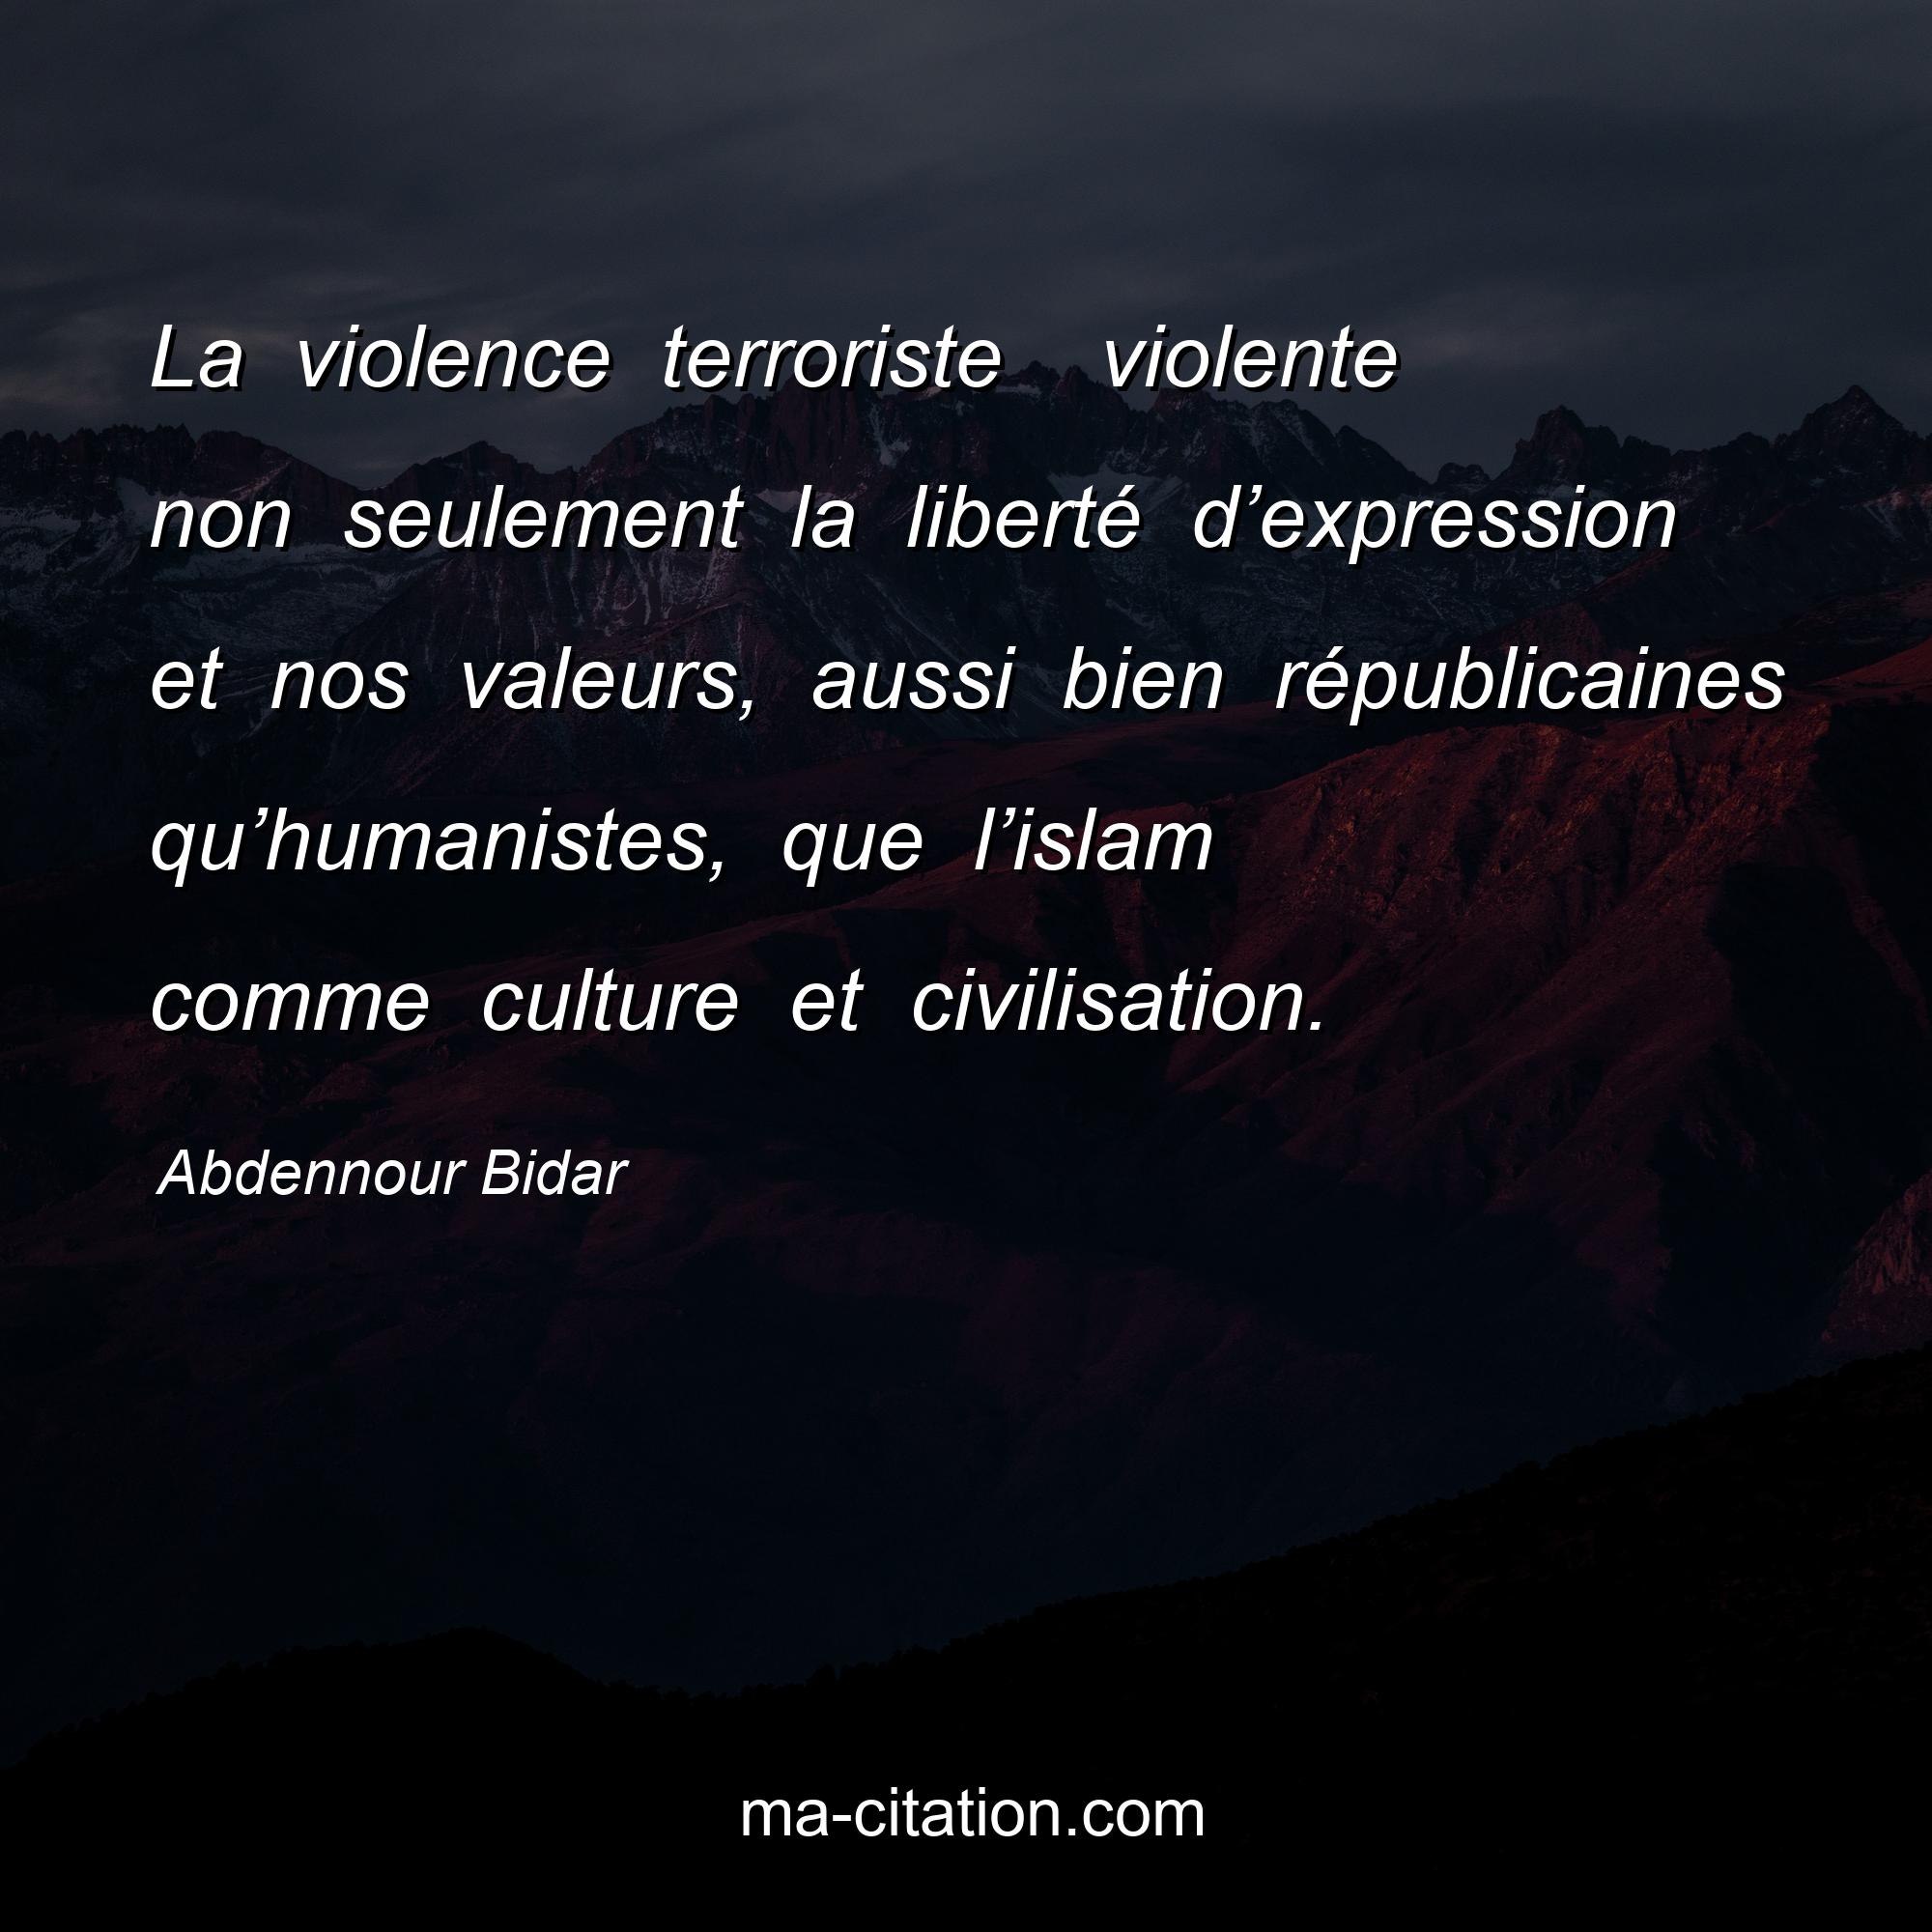 Abdennour Bidar : La violence terroriste  violente non seulement la liberté d’expression et nos valeurs, aussi bien républicaines qu’humanistes, que l’islam comme culture et civilisation.